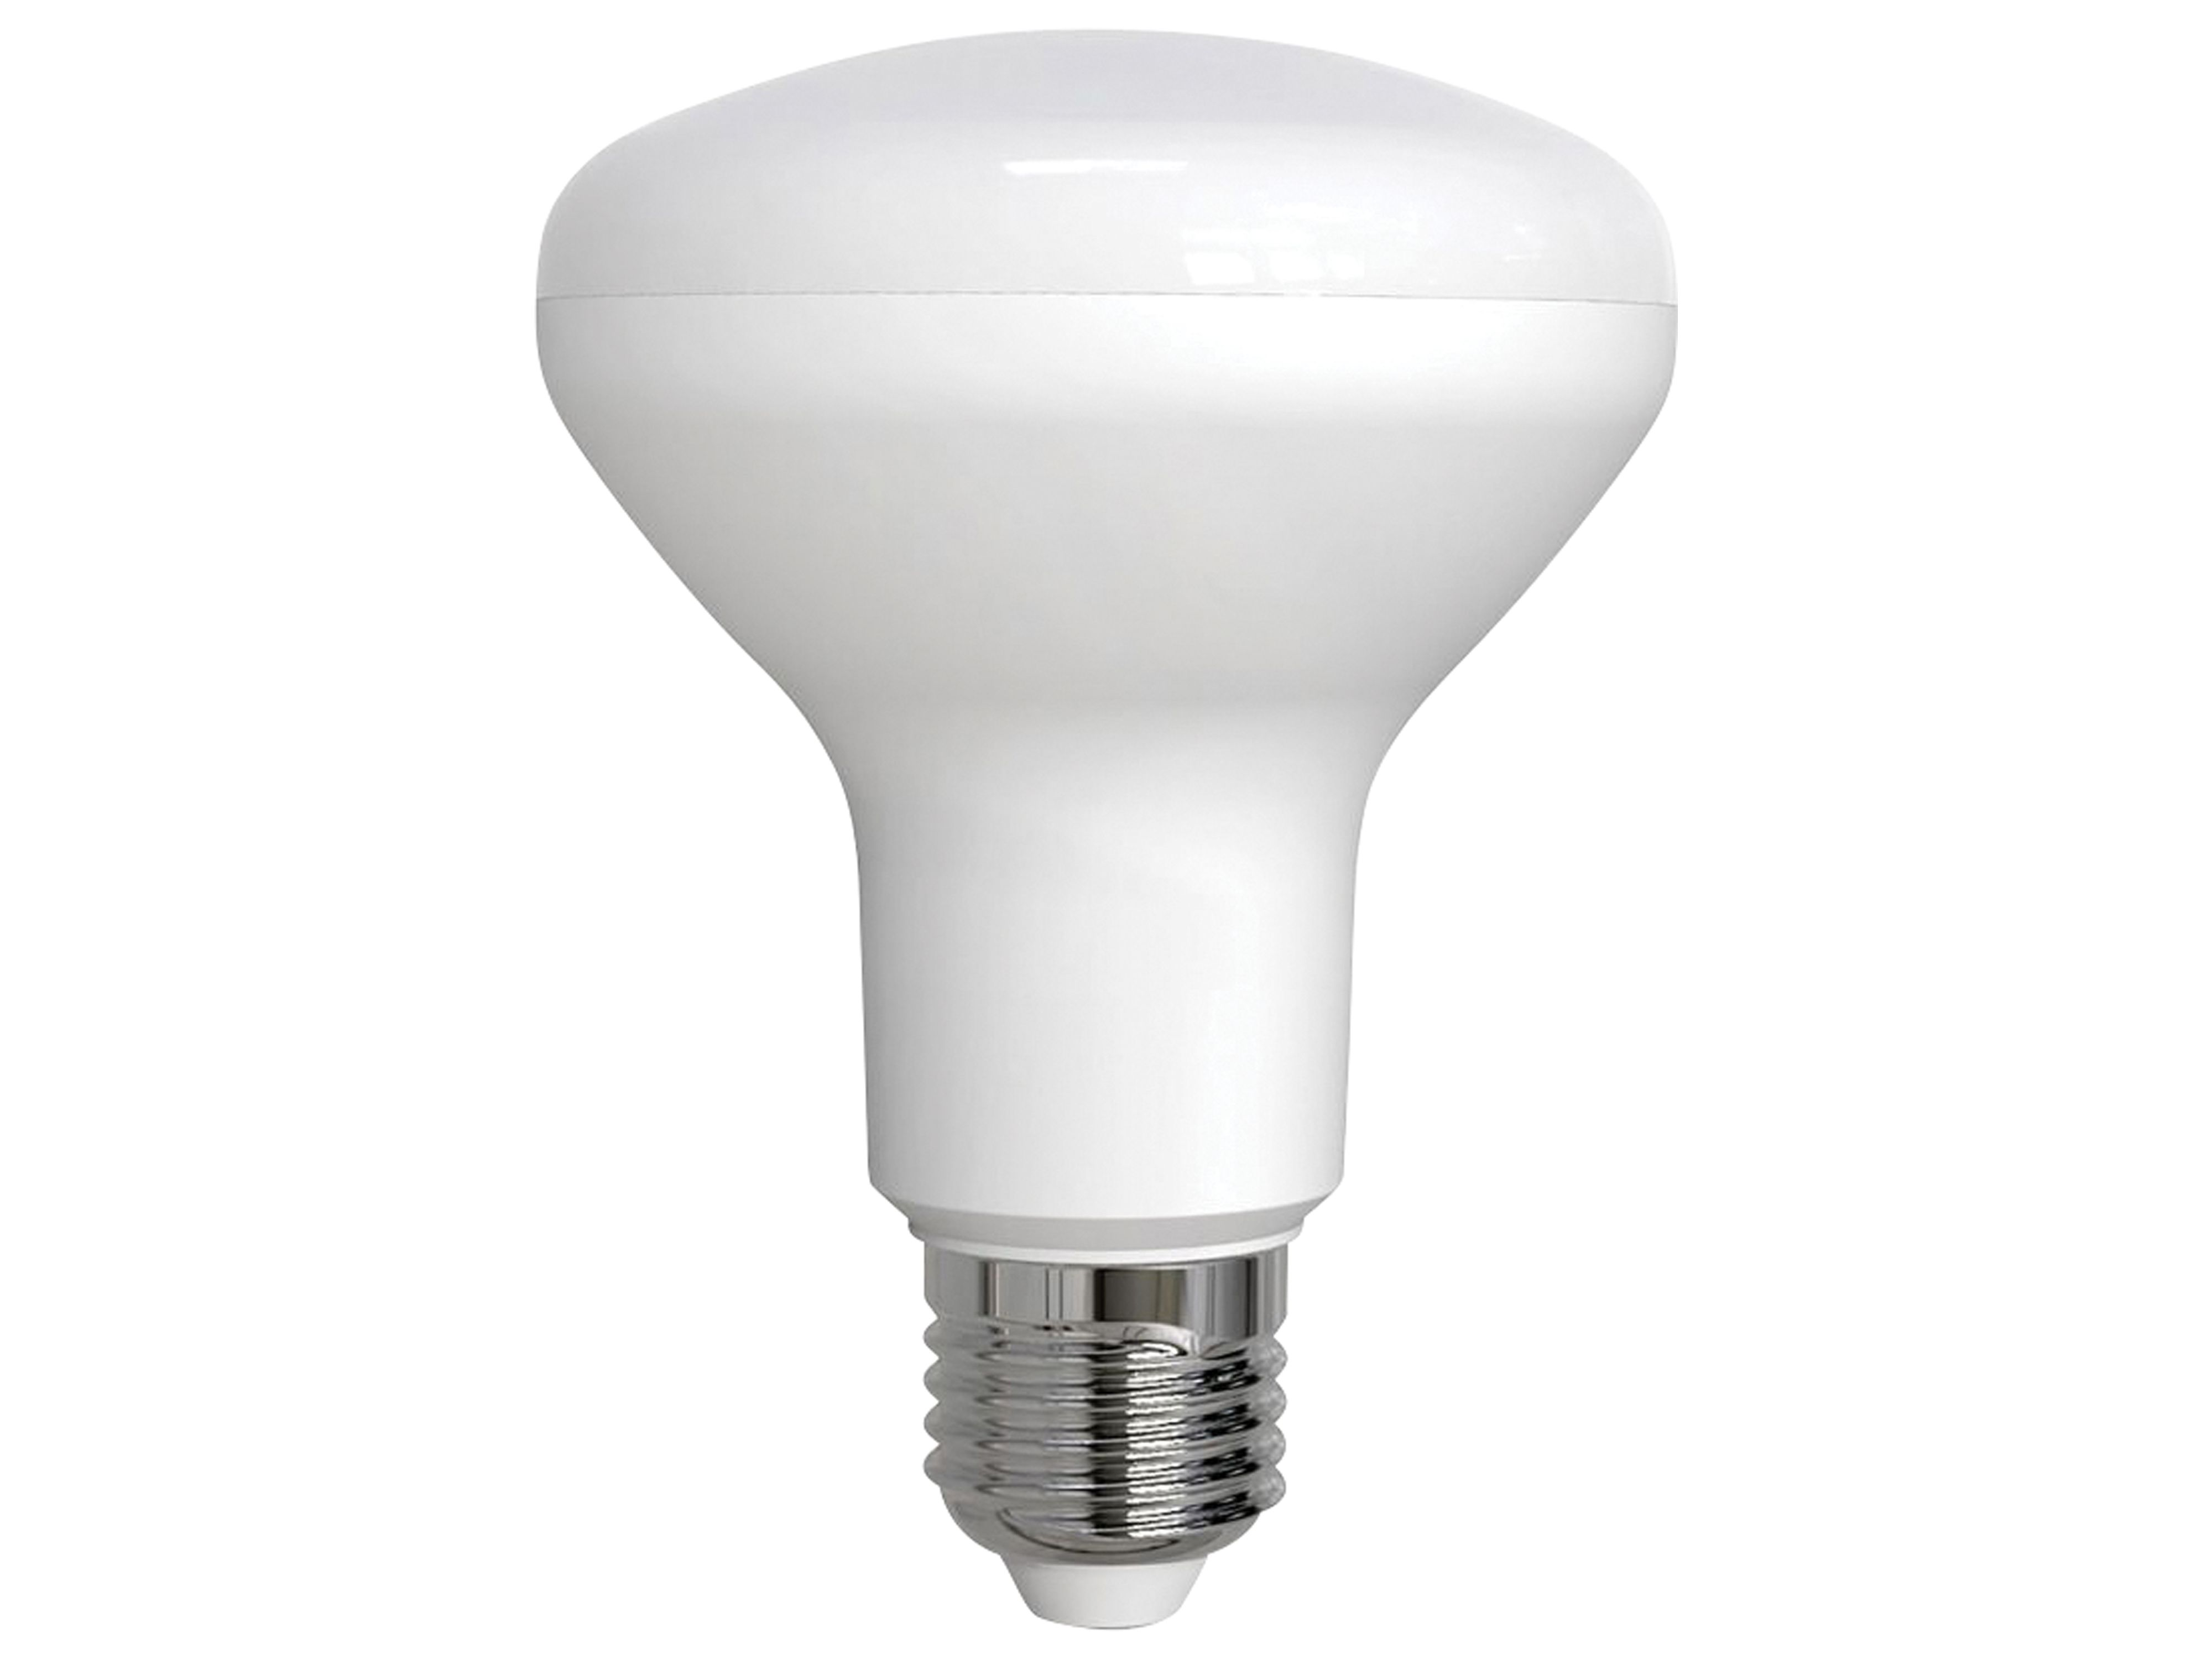 MÜLLER-LICHT LED-SMD-Reflektorlampe, E27, EEK: 14W, G, LED-Lampe 1055lm, 2700K